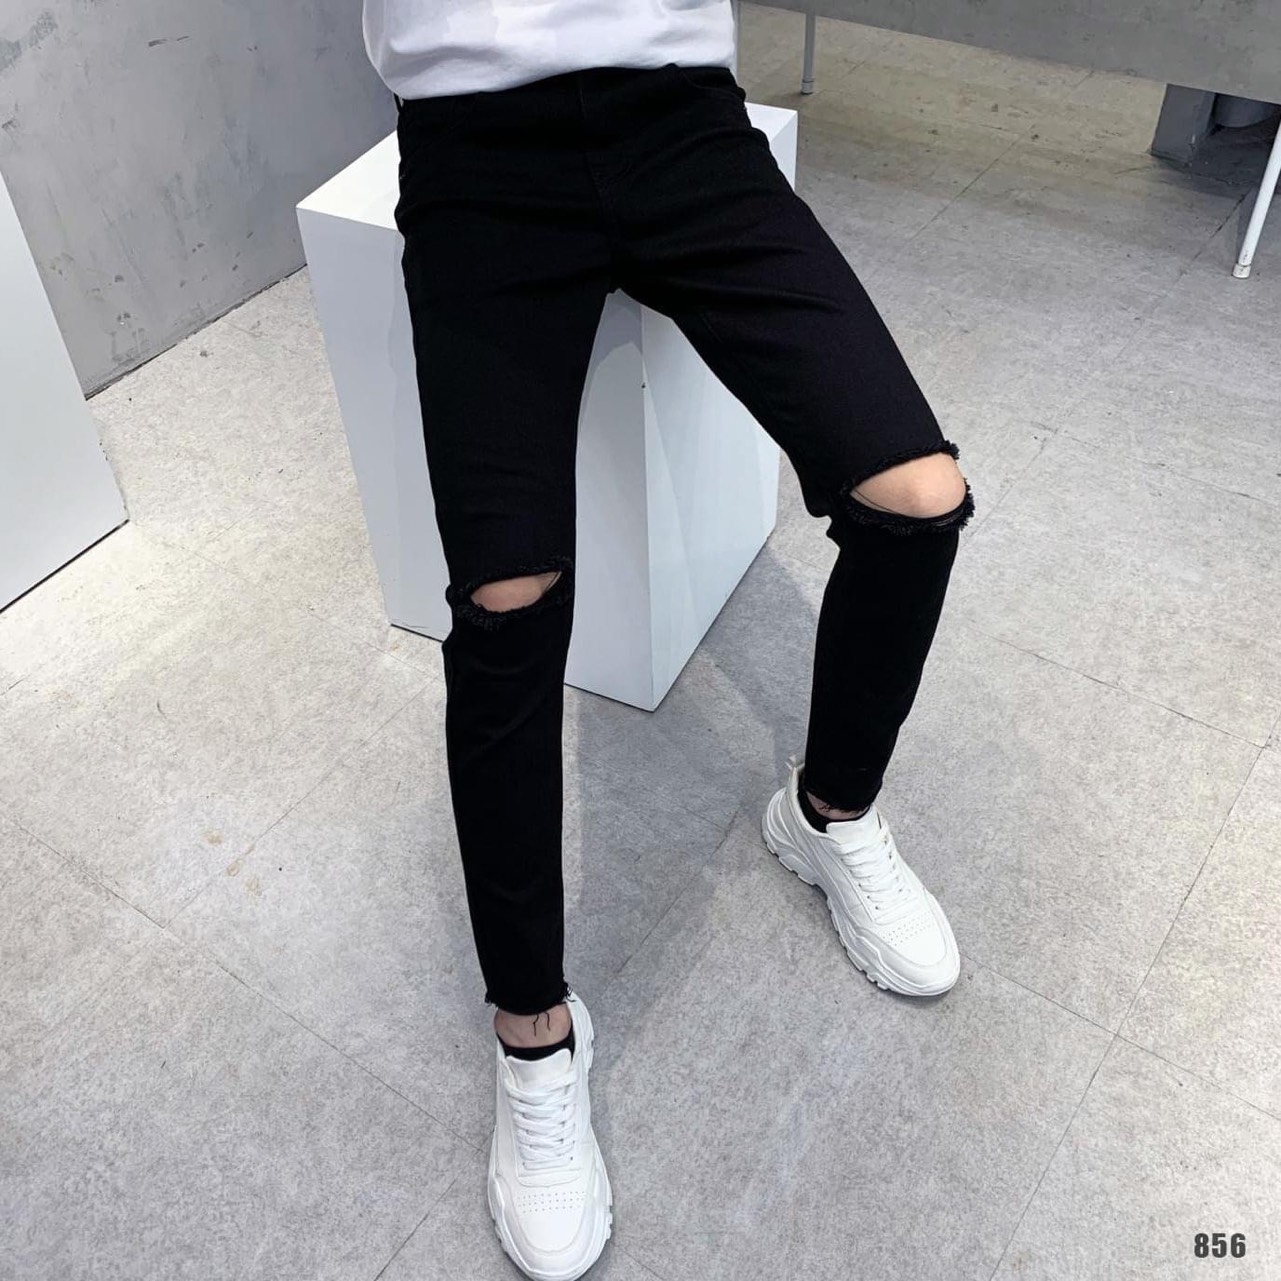 Quần jeans nam dài màu đen rách gối đơn giản mẫu bán chạy năm nay thời